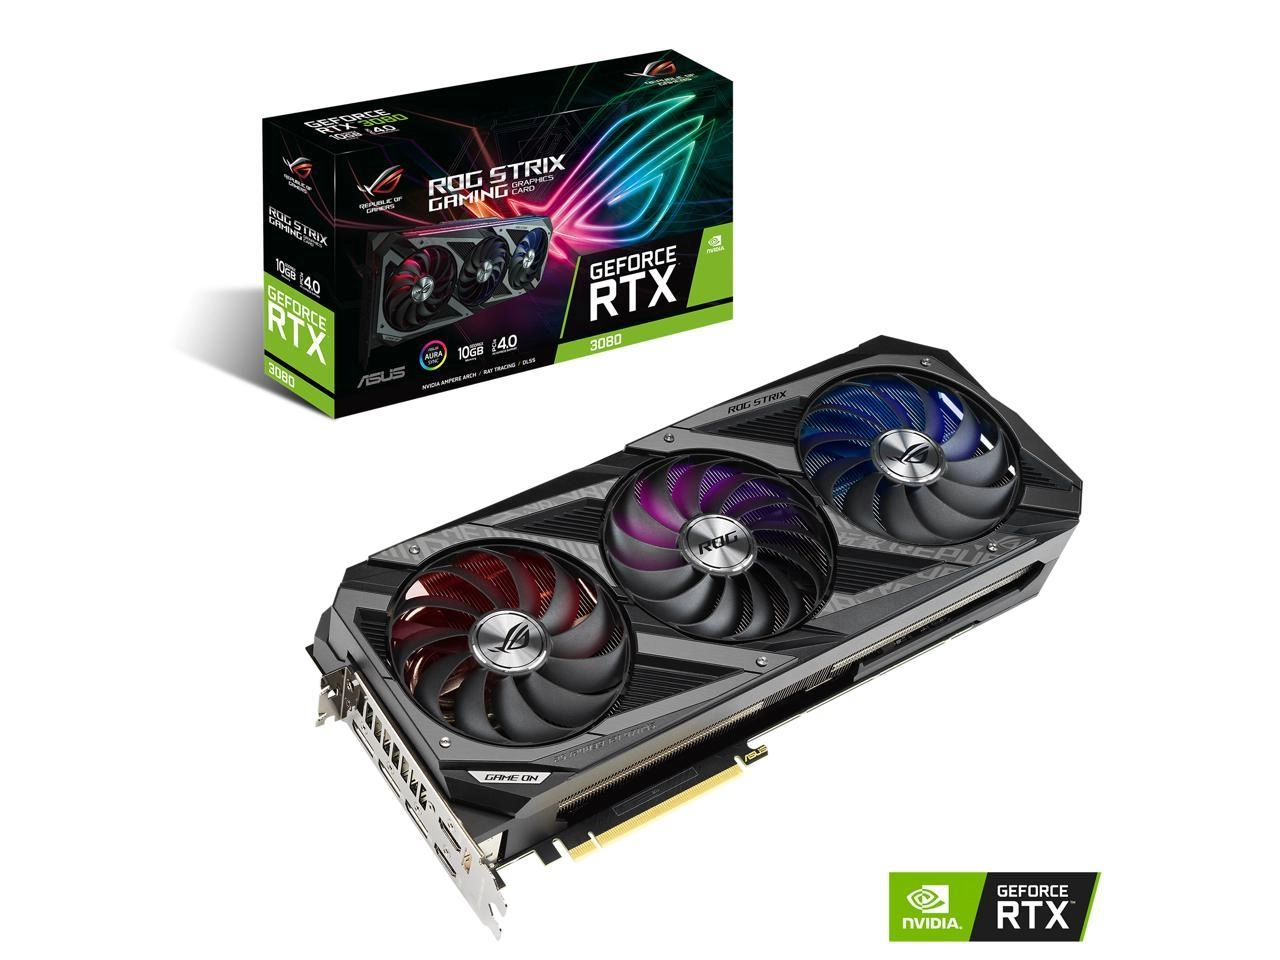 ASUS ROG Strix GeForce RTX 3080 Gaming 10GB Package